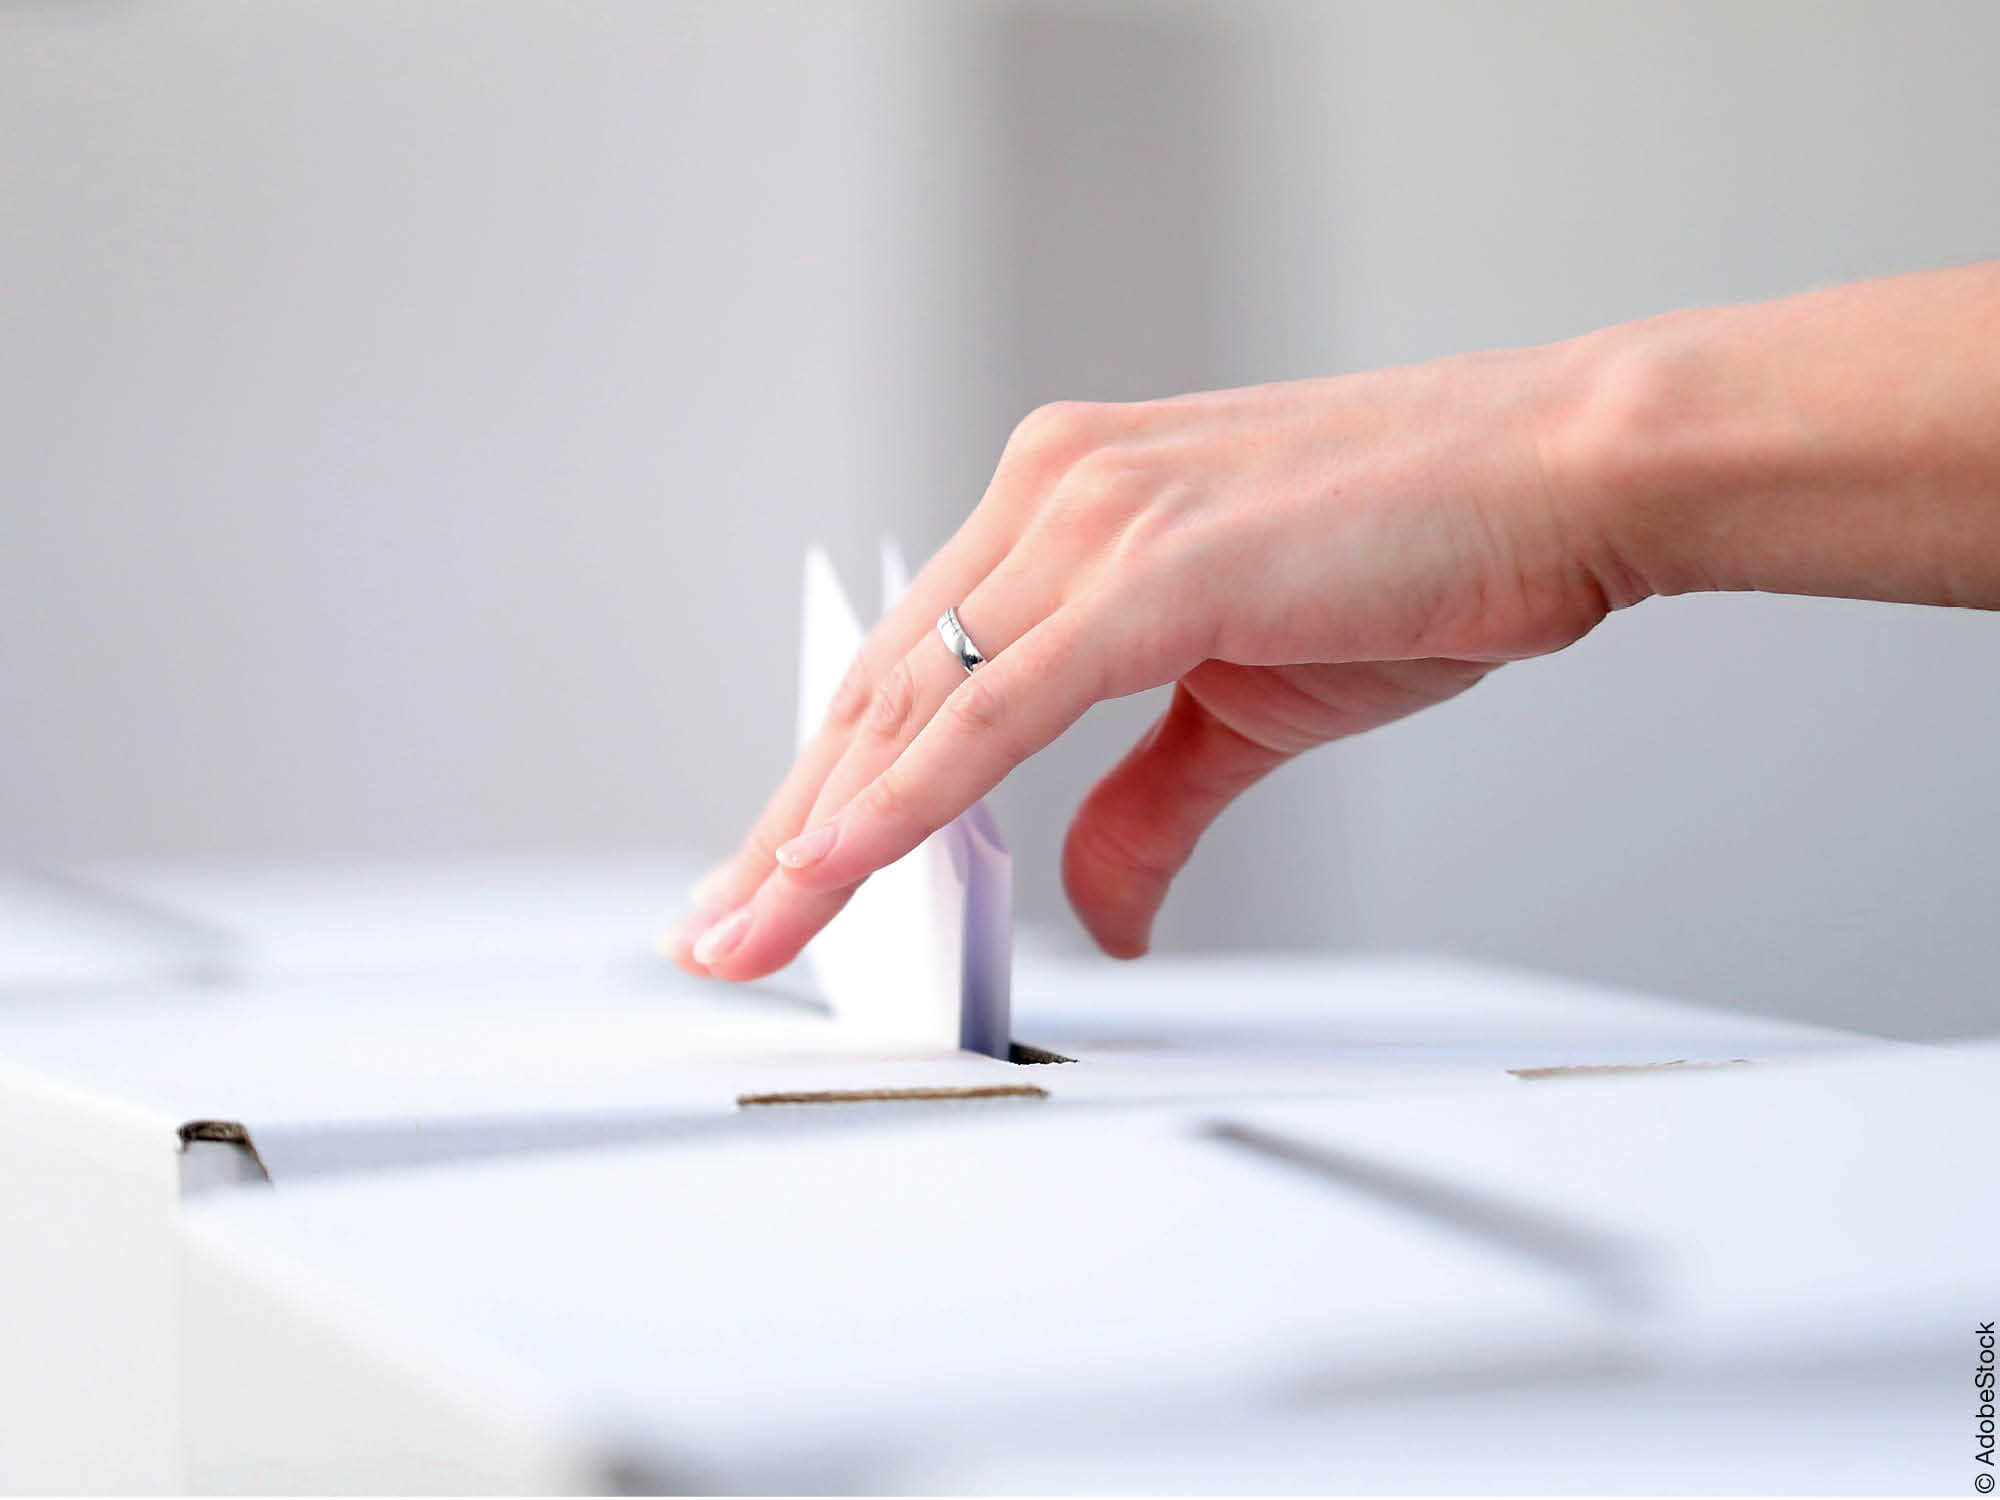 Wahlzettel wird in Wahlurne geworfen